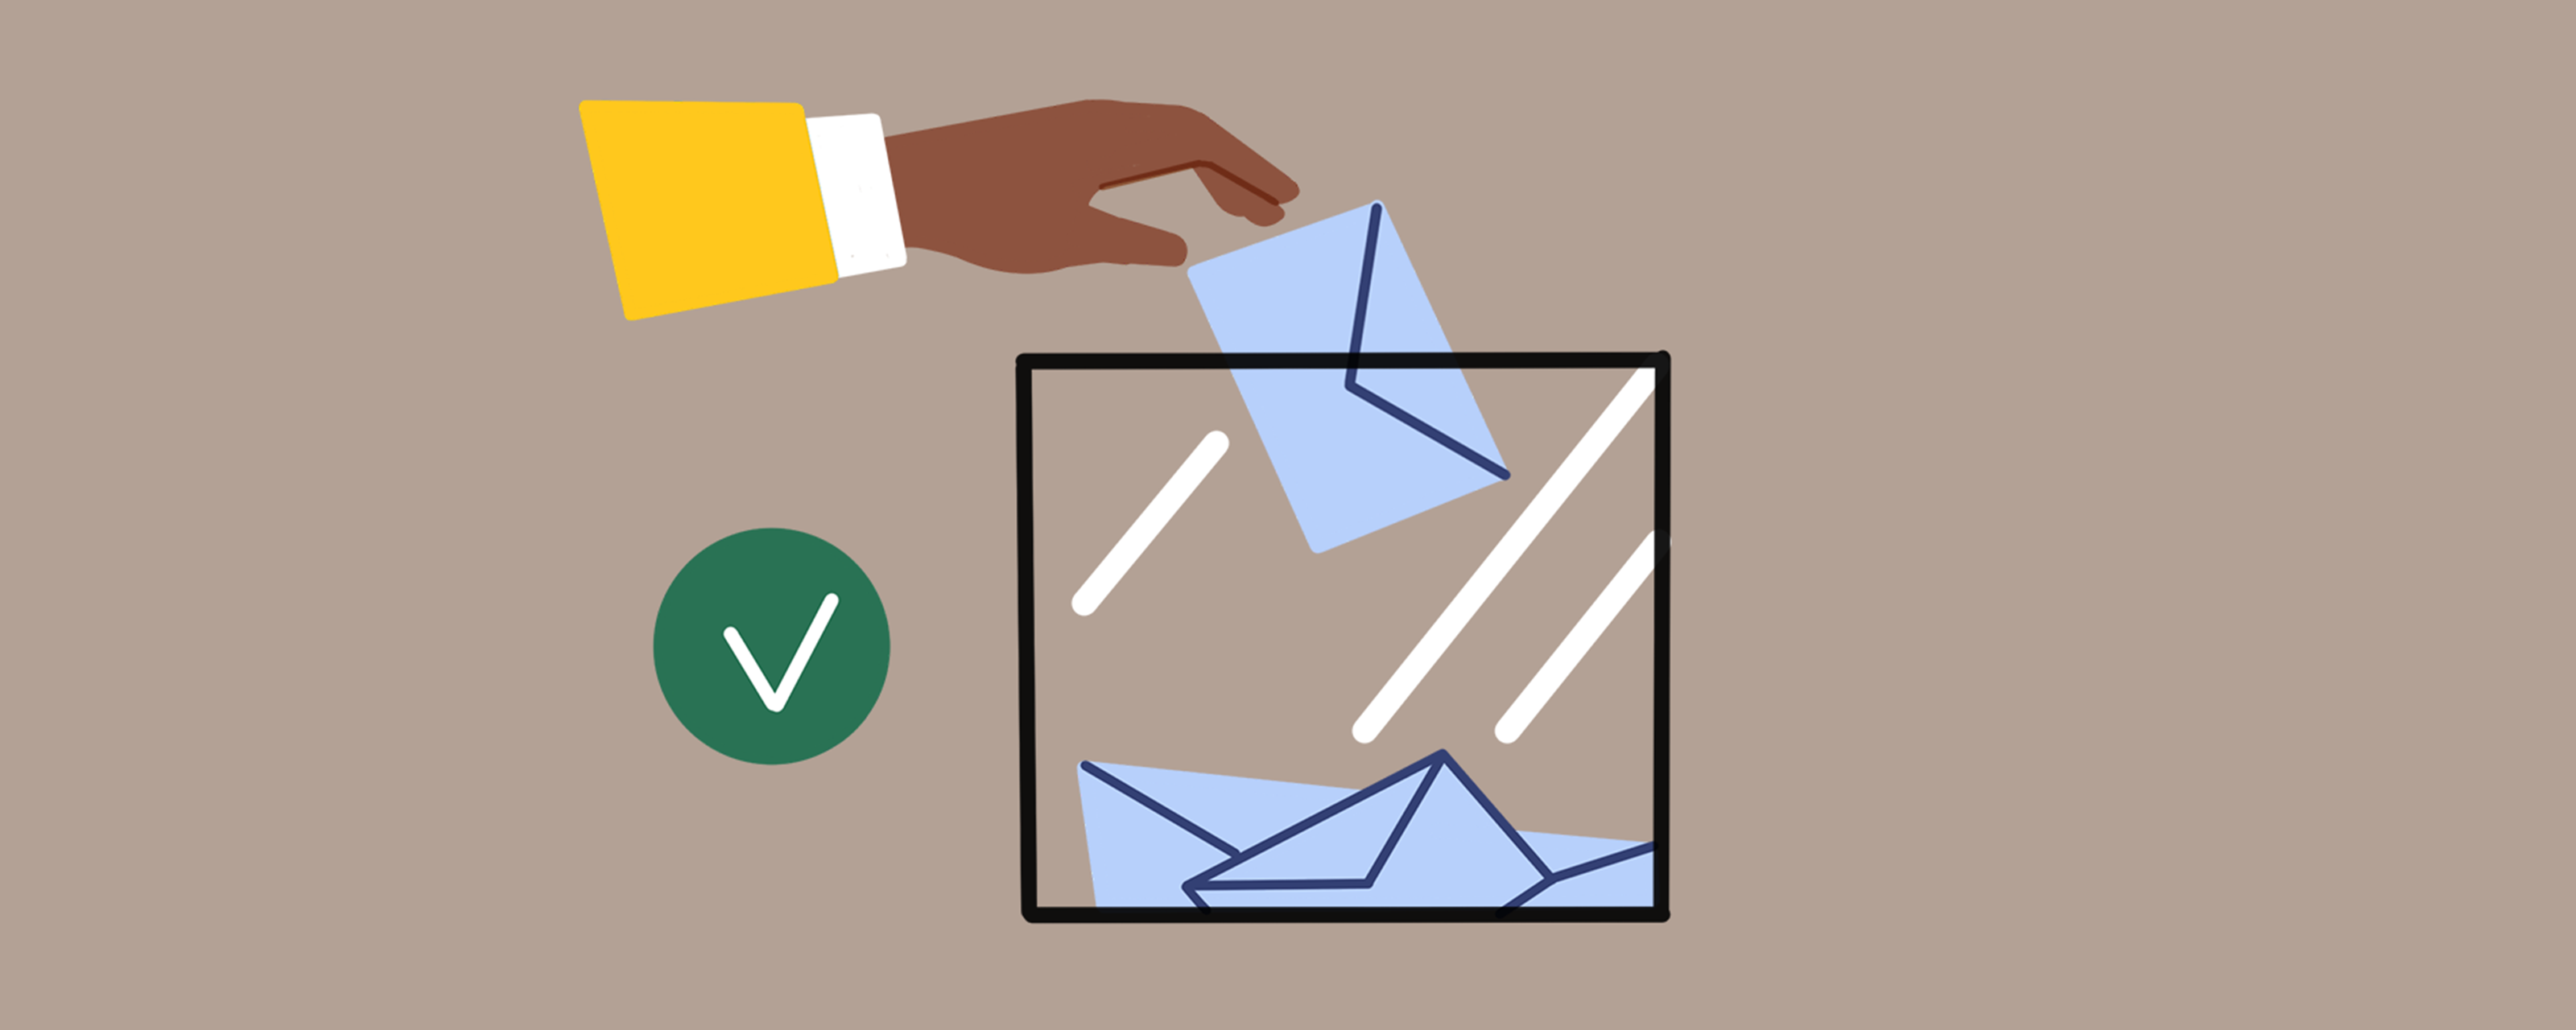 Infographie : une main met un bulletin dans l'urne de vote